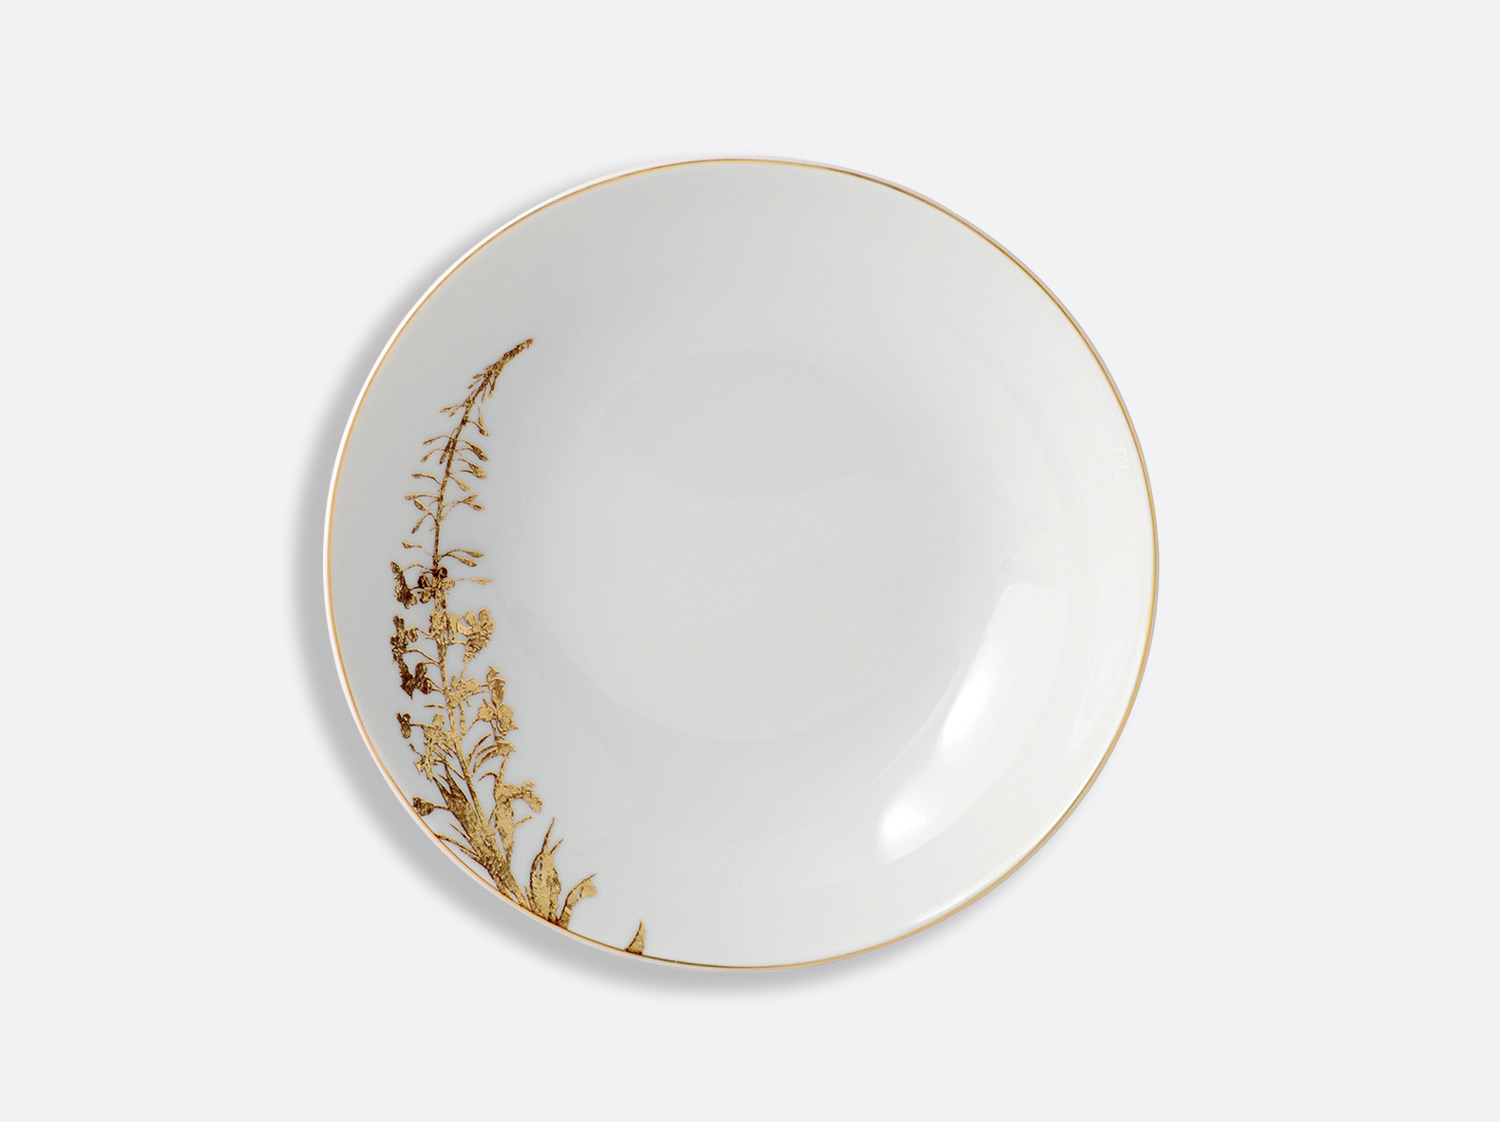 Assiette creuse 19 cm en porcelaine de la collection Vegetal or Bernardaud